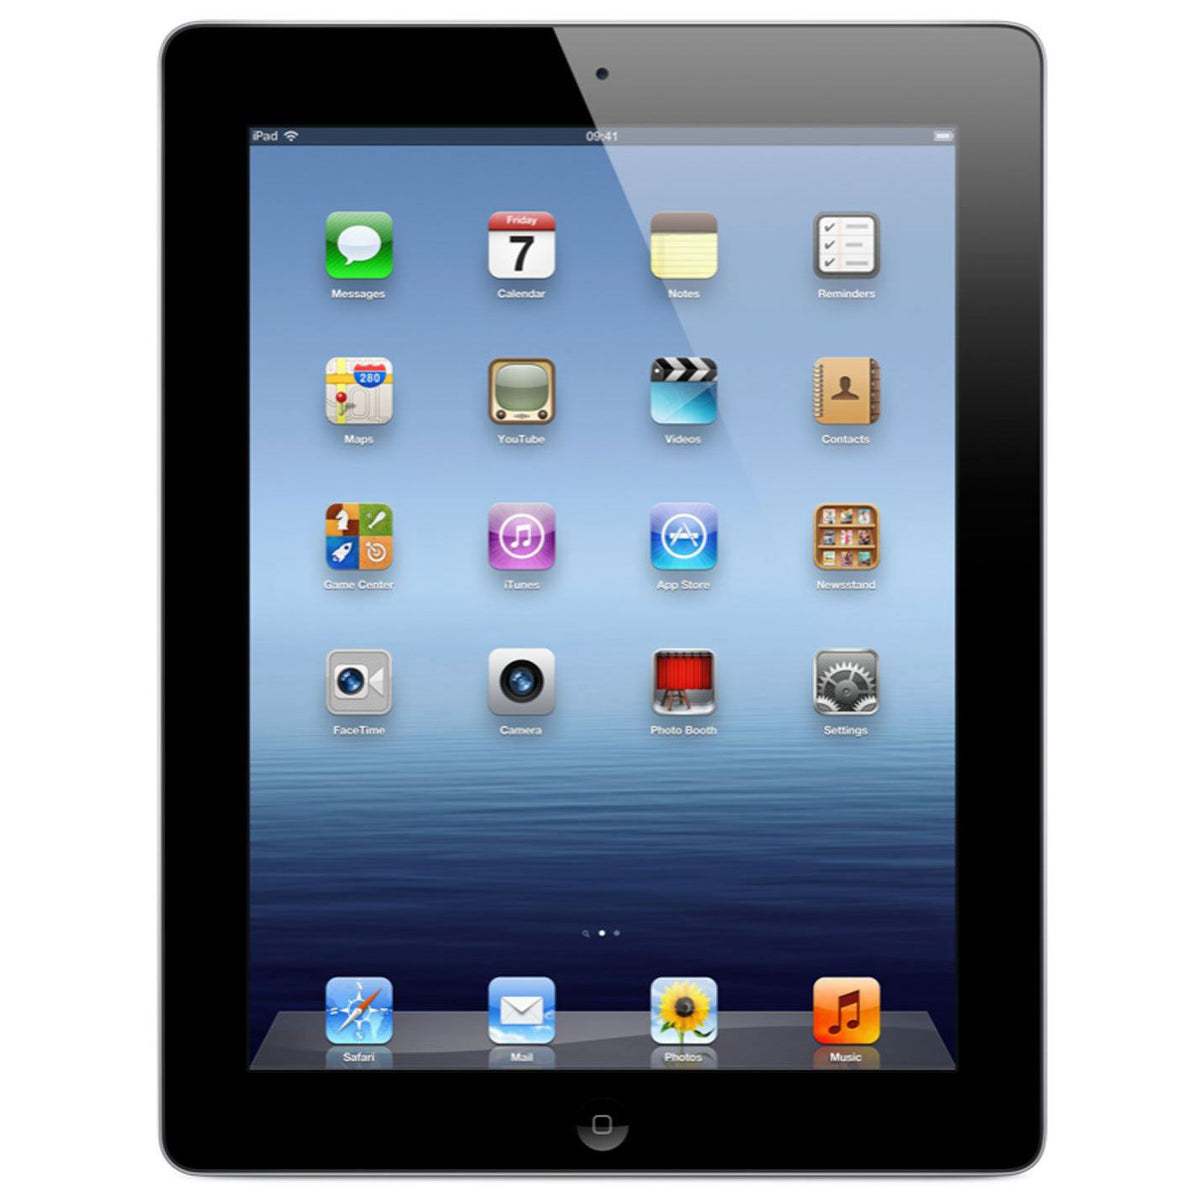 Apple iPad 9.7-inch (2012 3rd Gen.) (Wi-Fi + Cellular)